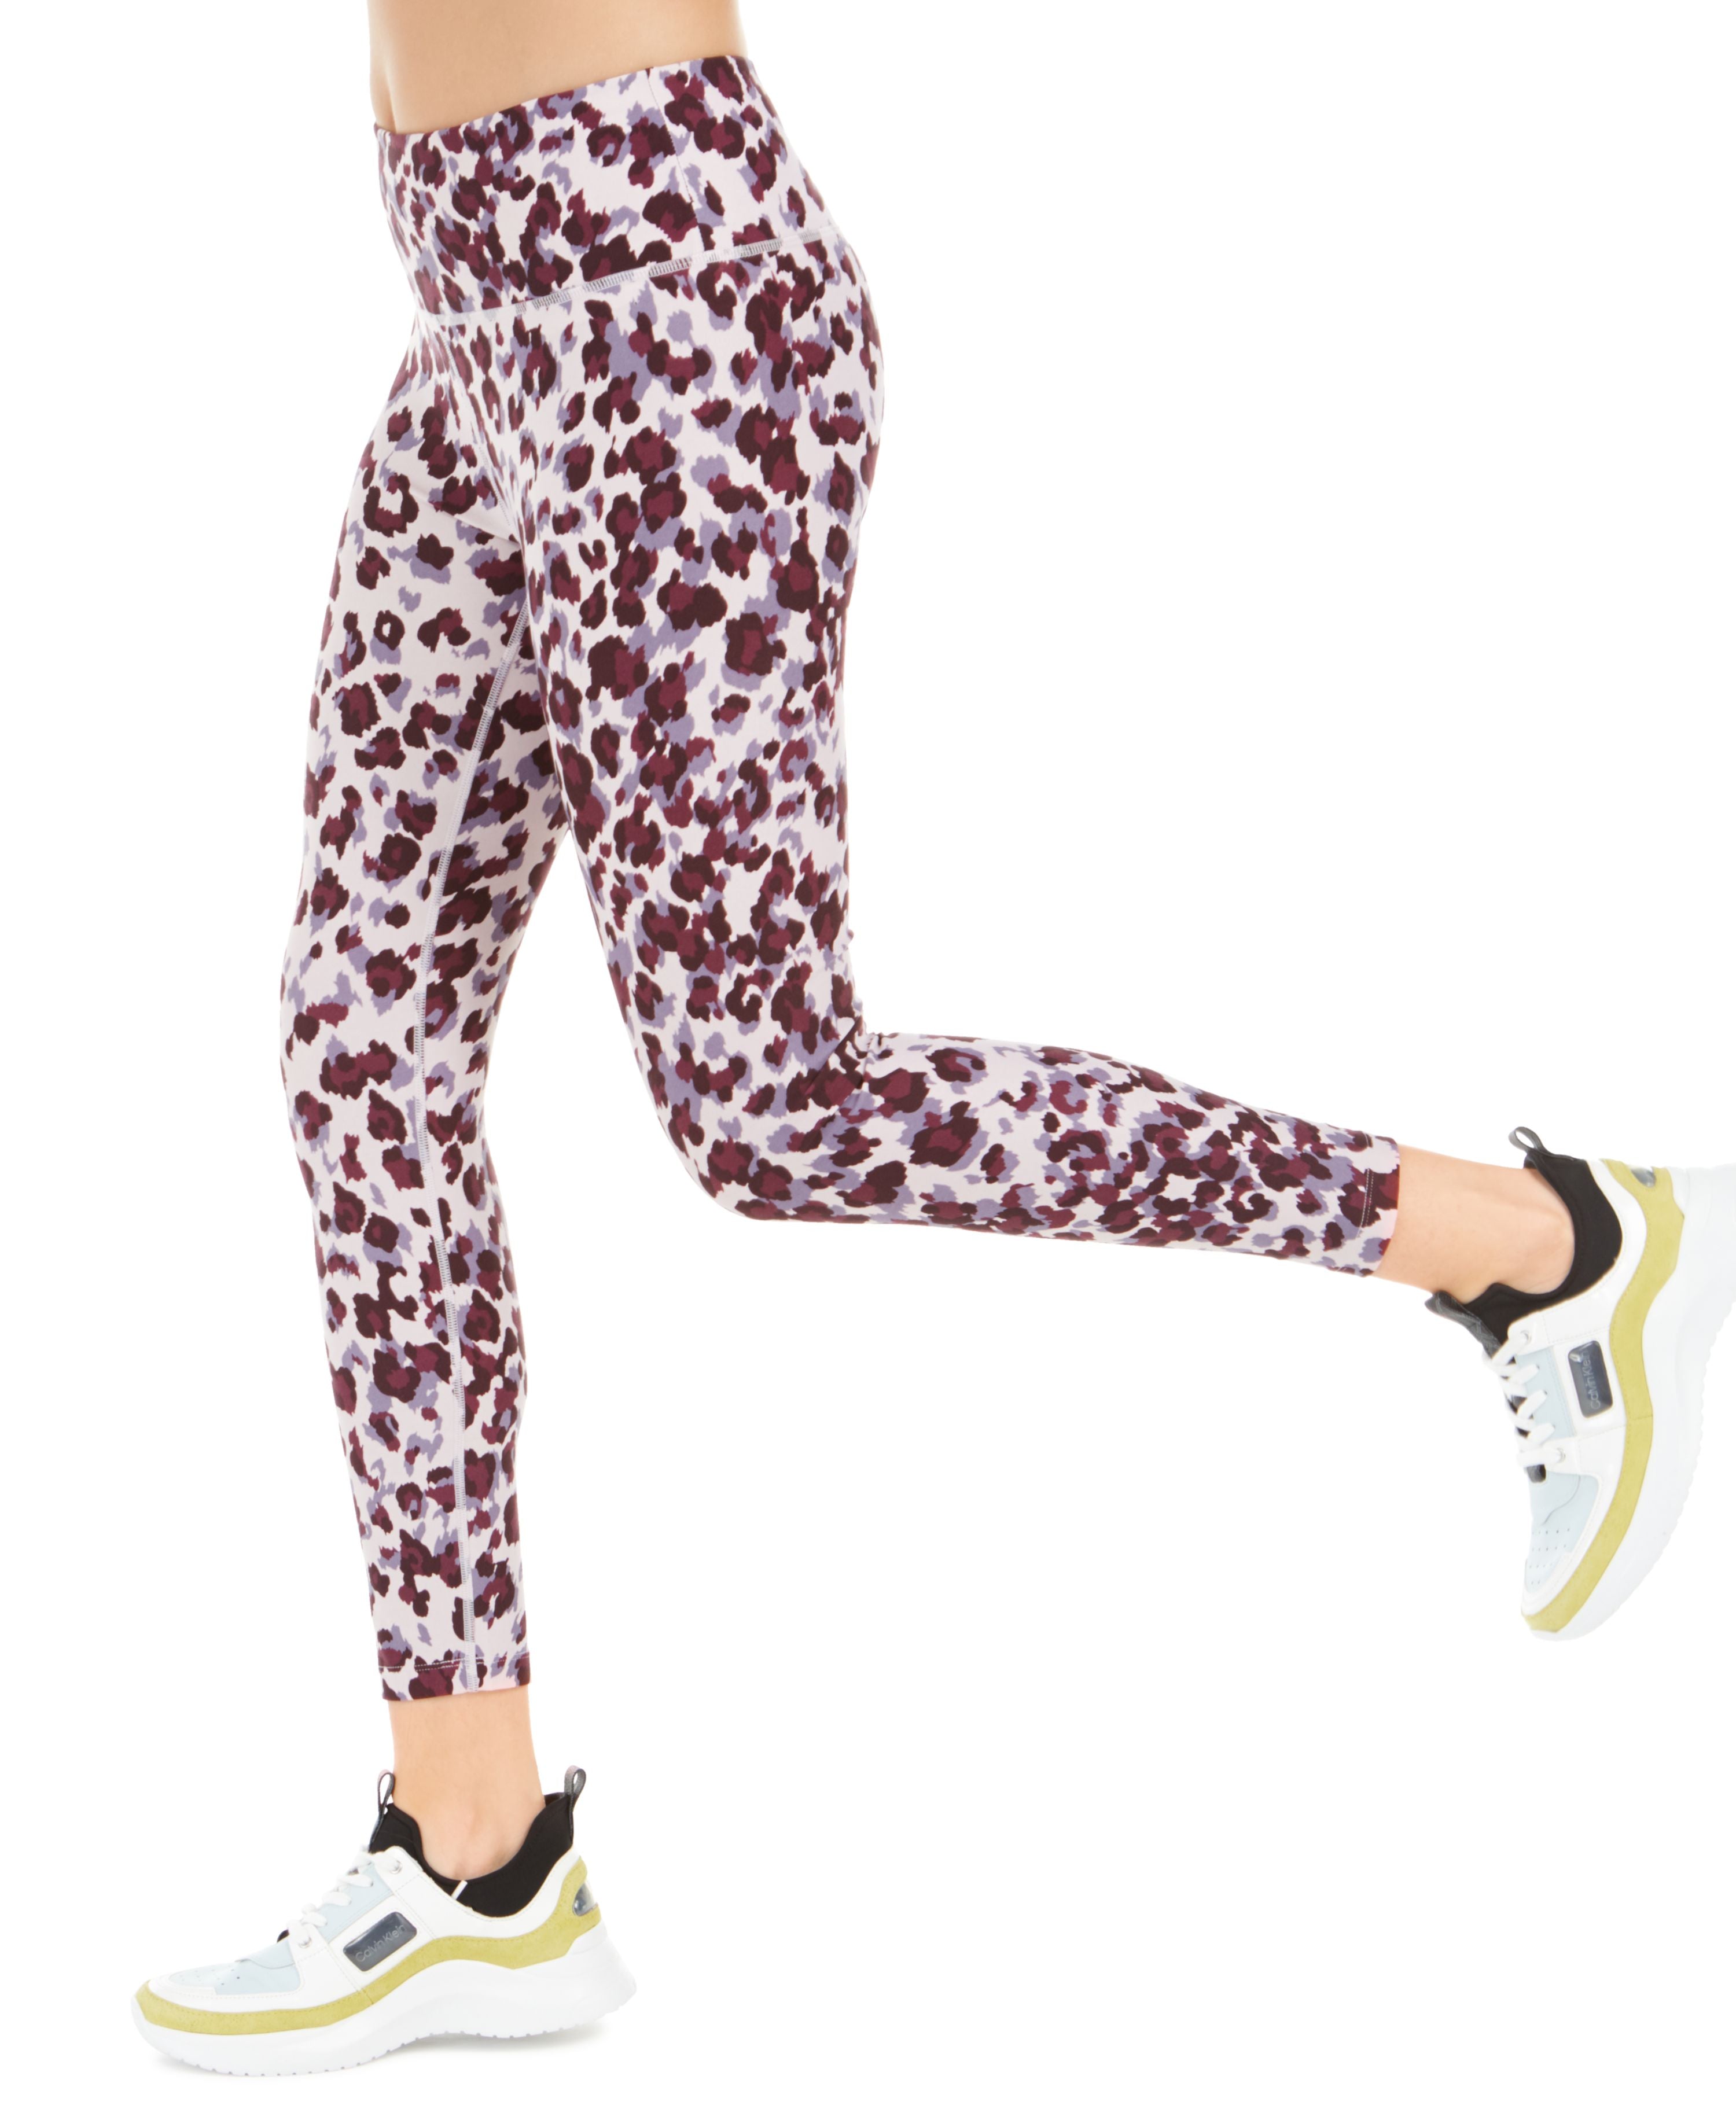 Calvin Klein Womens Leopard Print High Waist Leggings PF9P7879-3WK